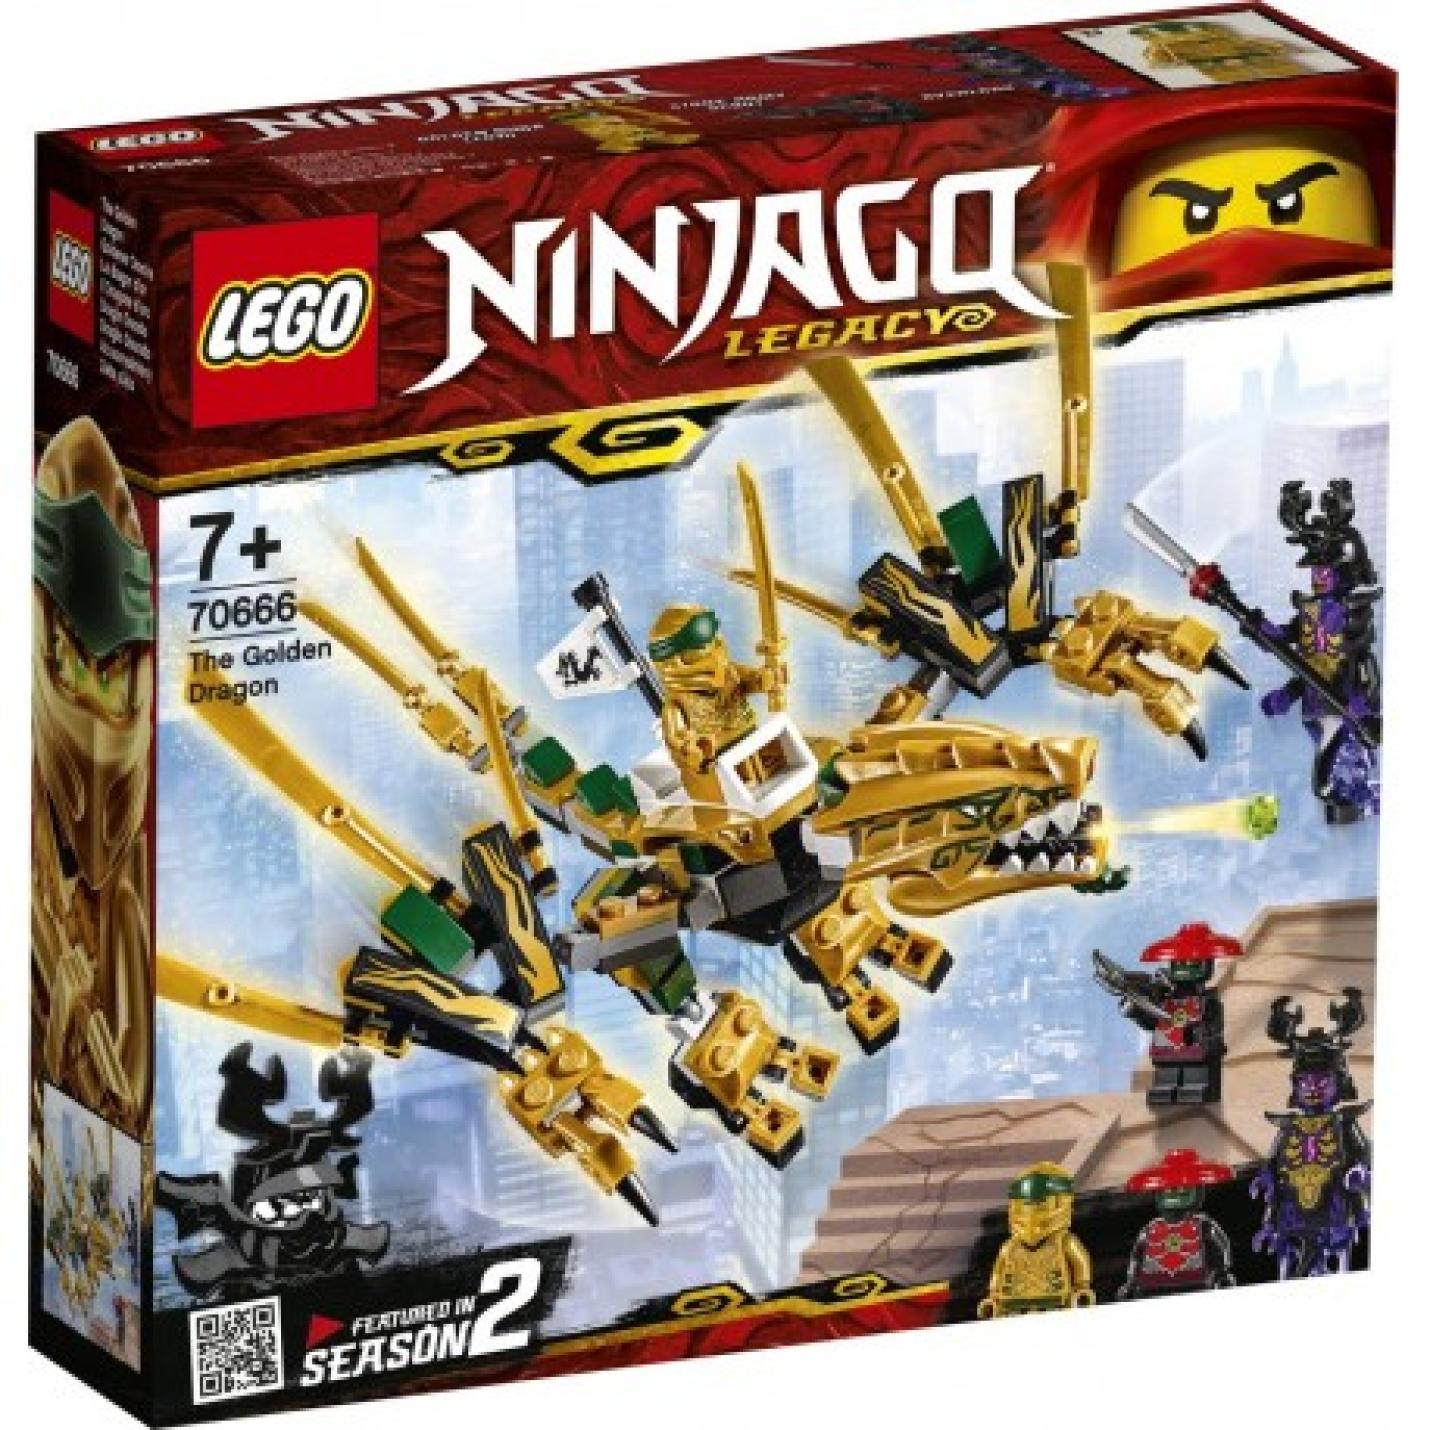 LEGO NINJAGO Legacy De Gouden Draak - 70666 2